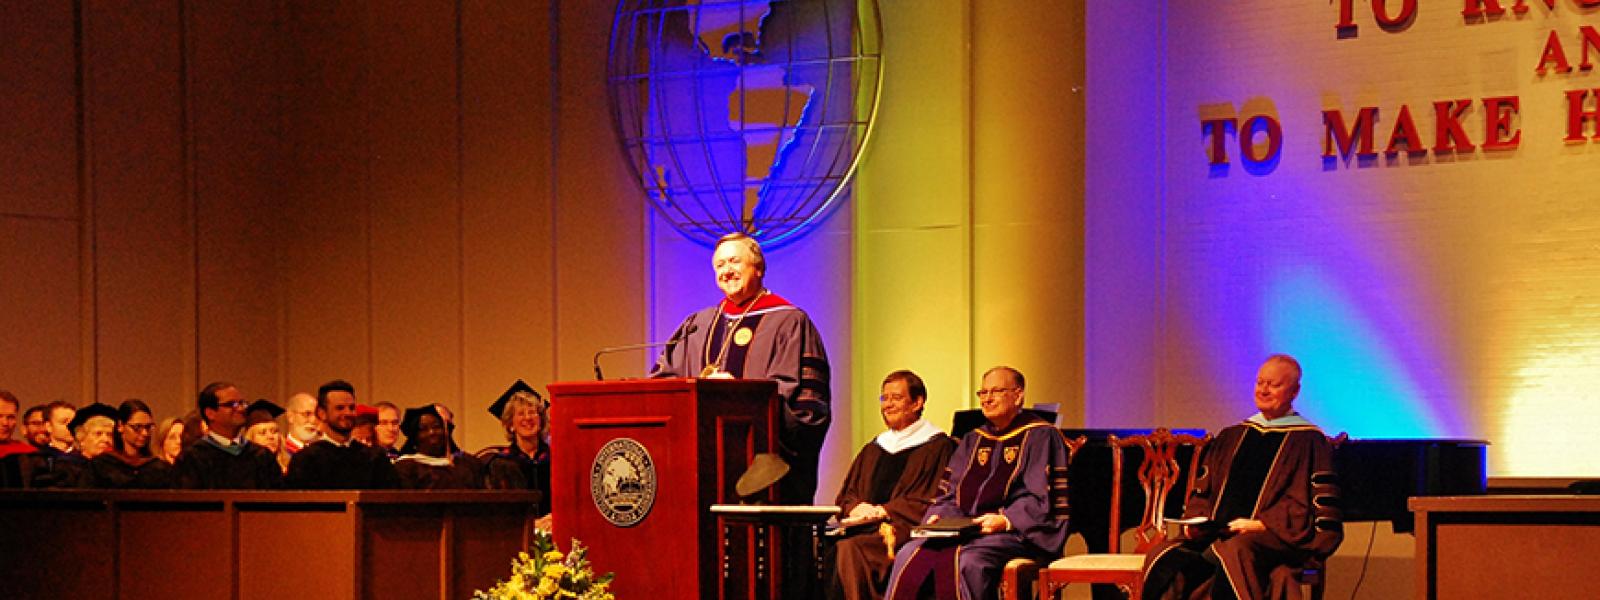 CIU President Dr. Mark Smith